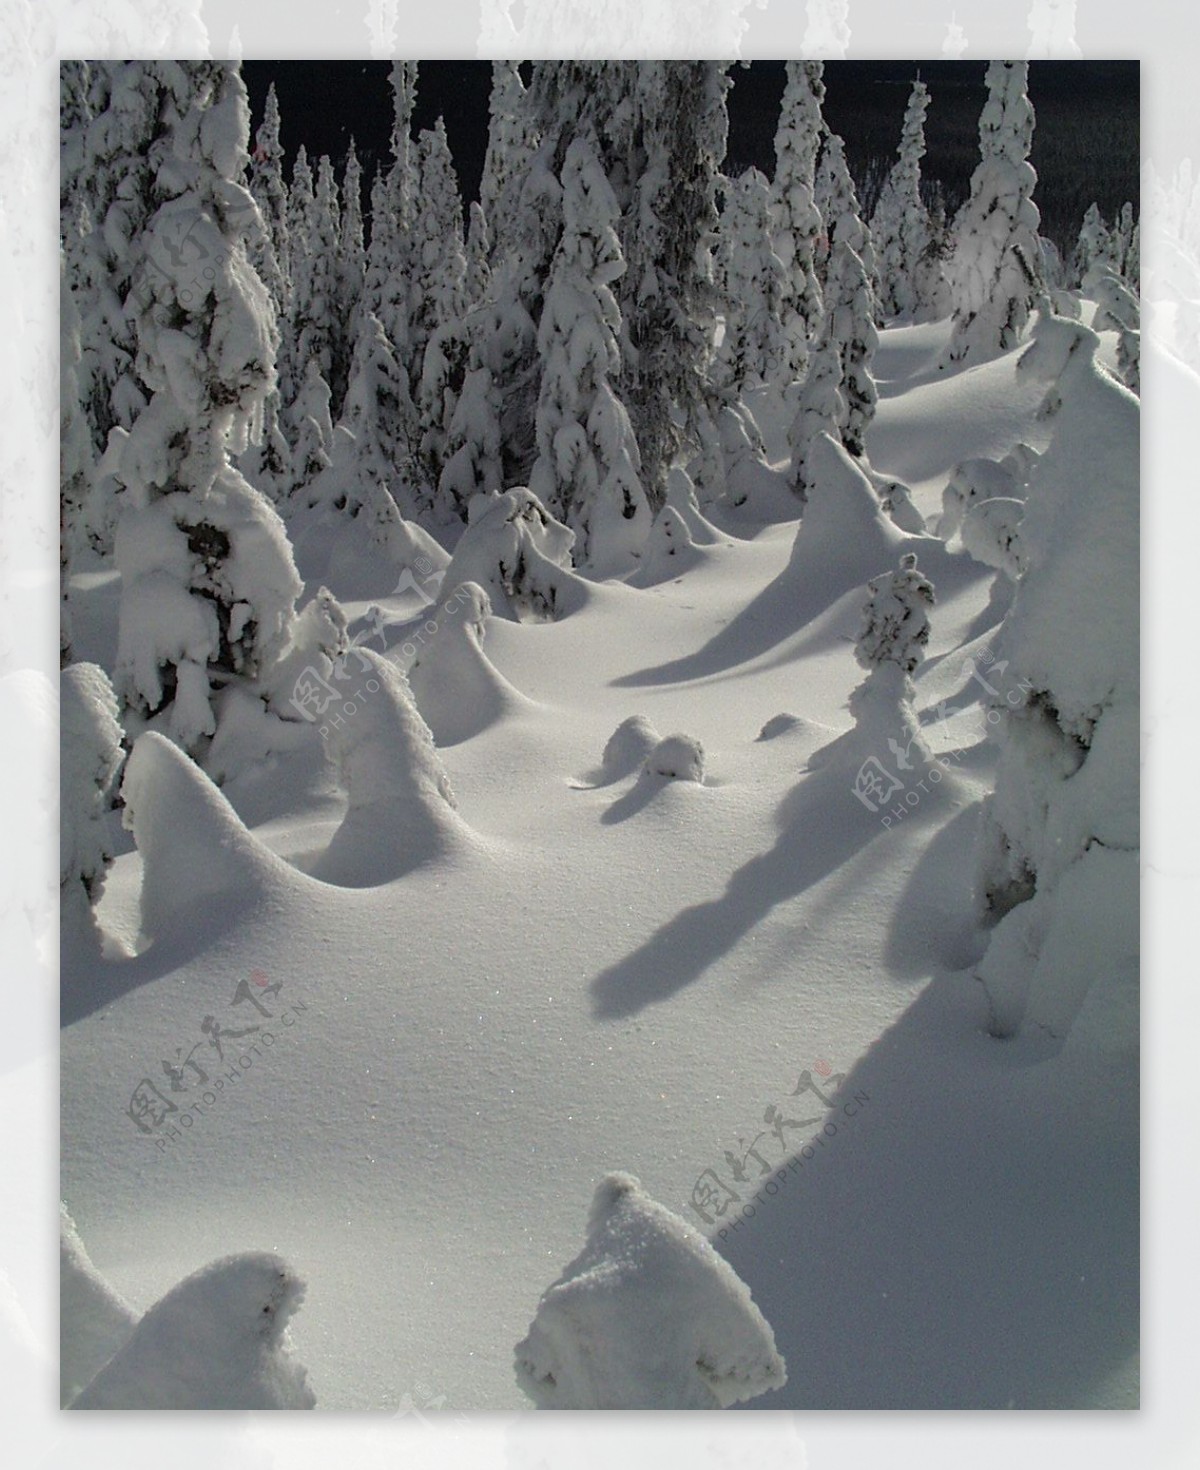 冰雪世界自然风景贴图素材JPG0301